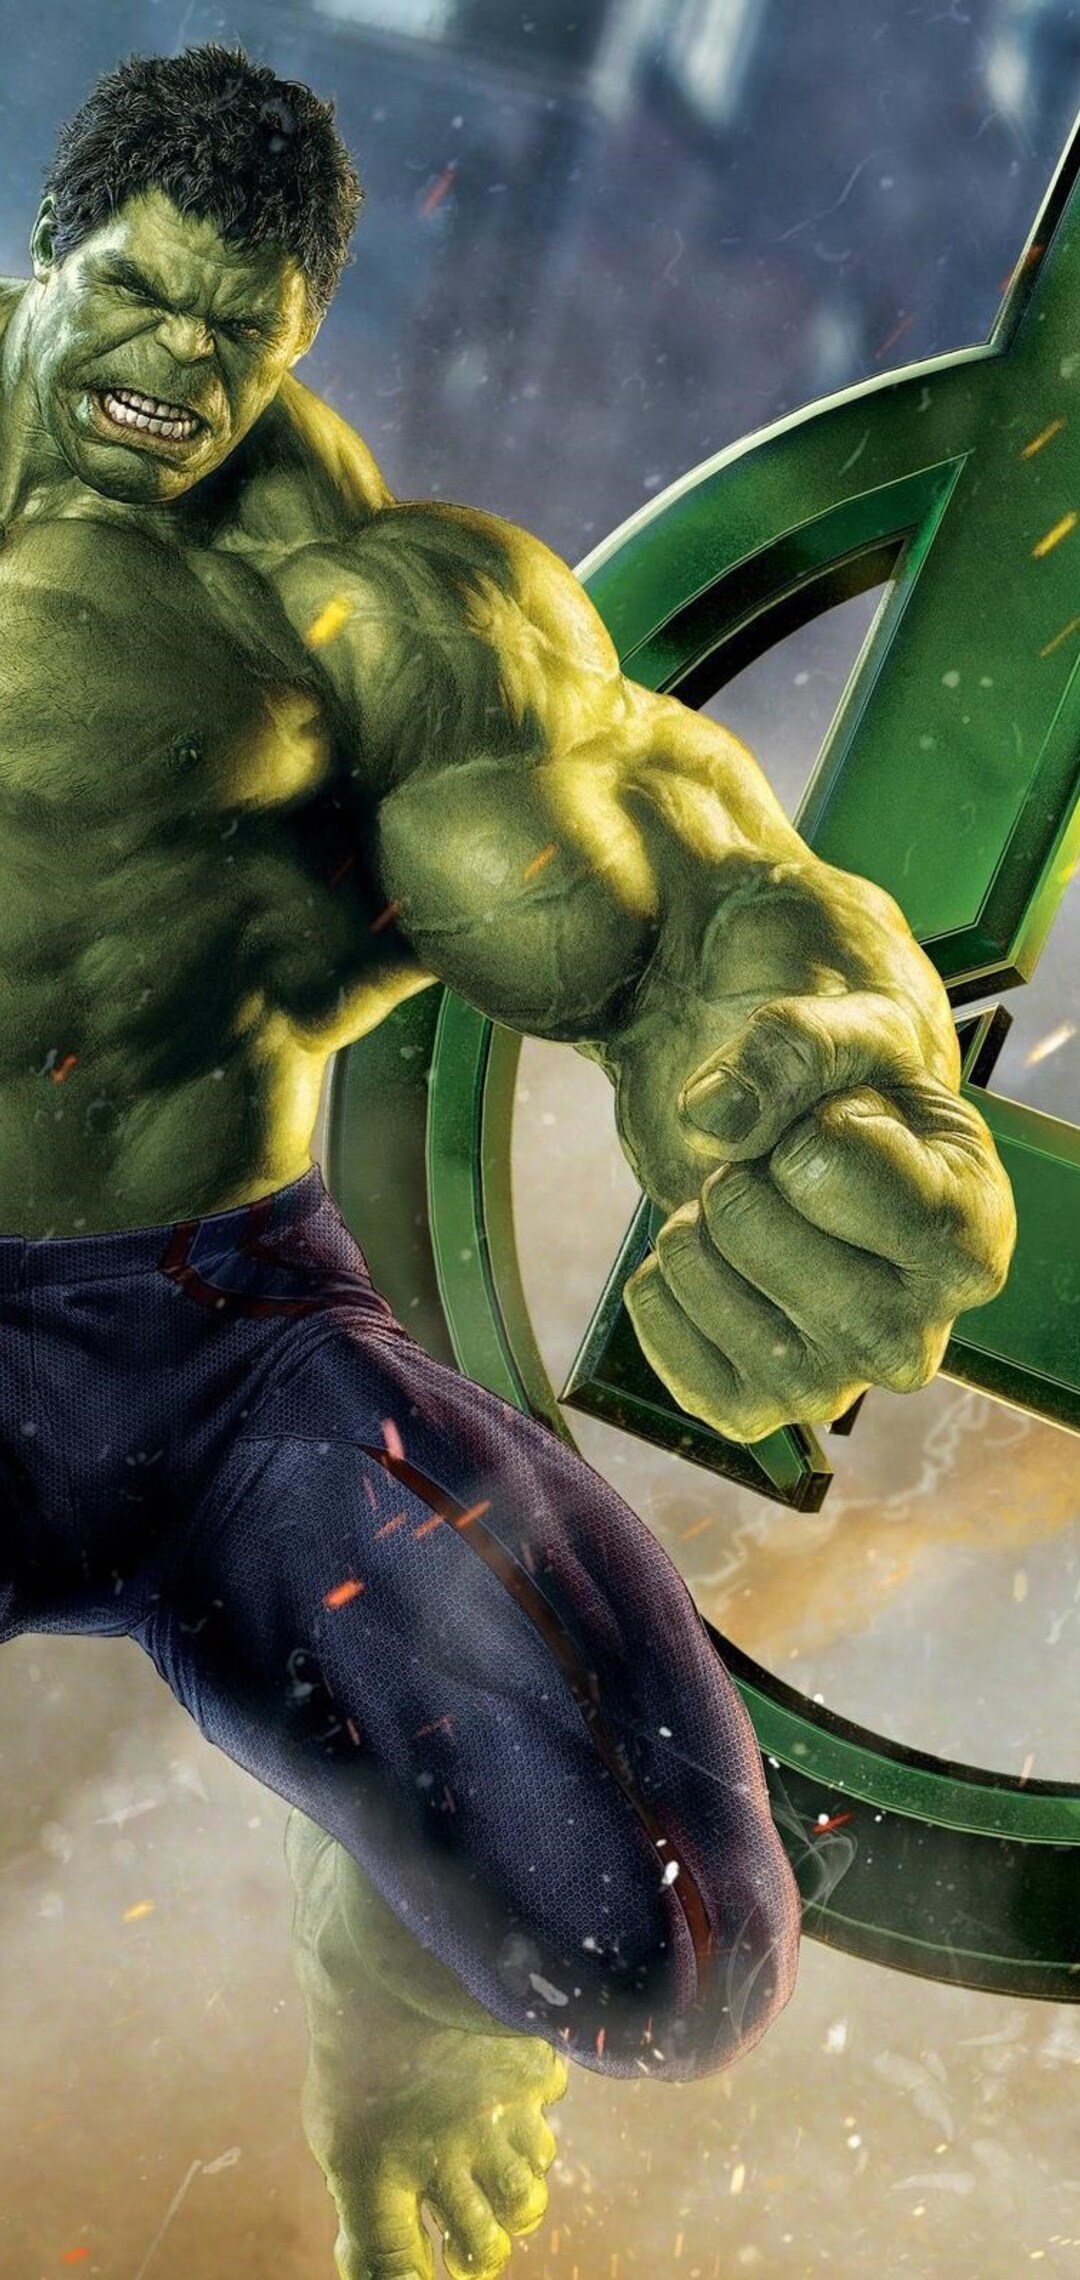 Ahay.vn - Tại sao Hulk lại mặc quần màu tím?